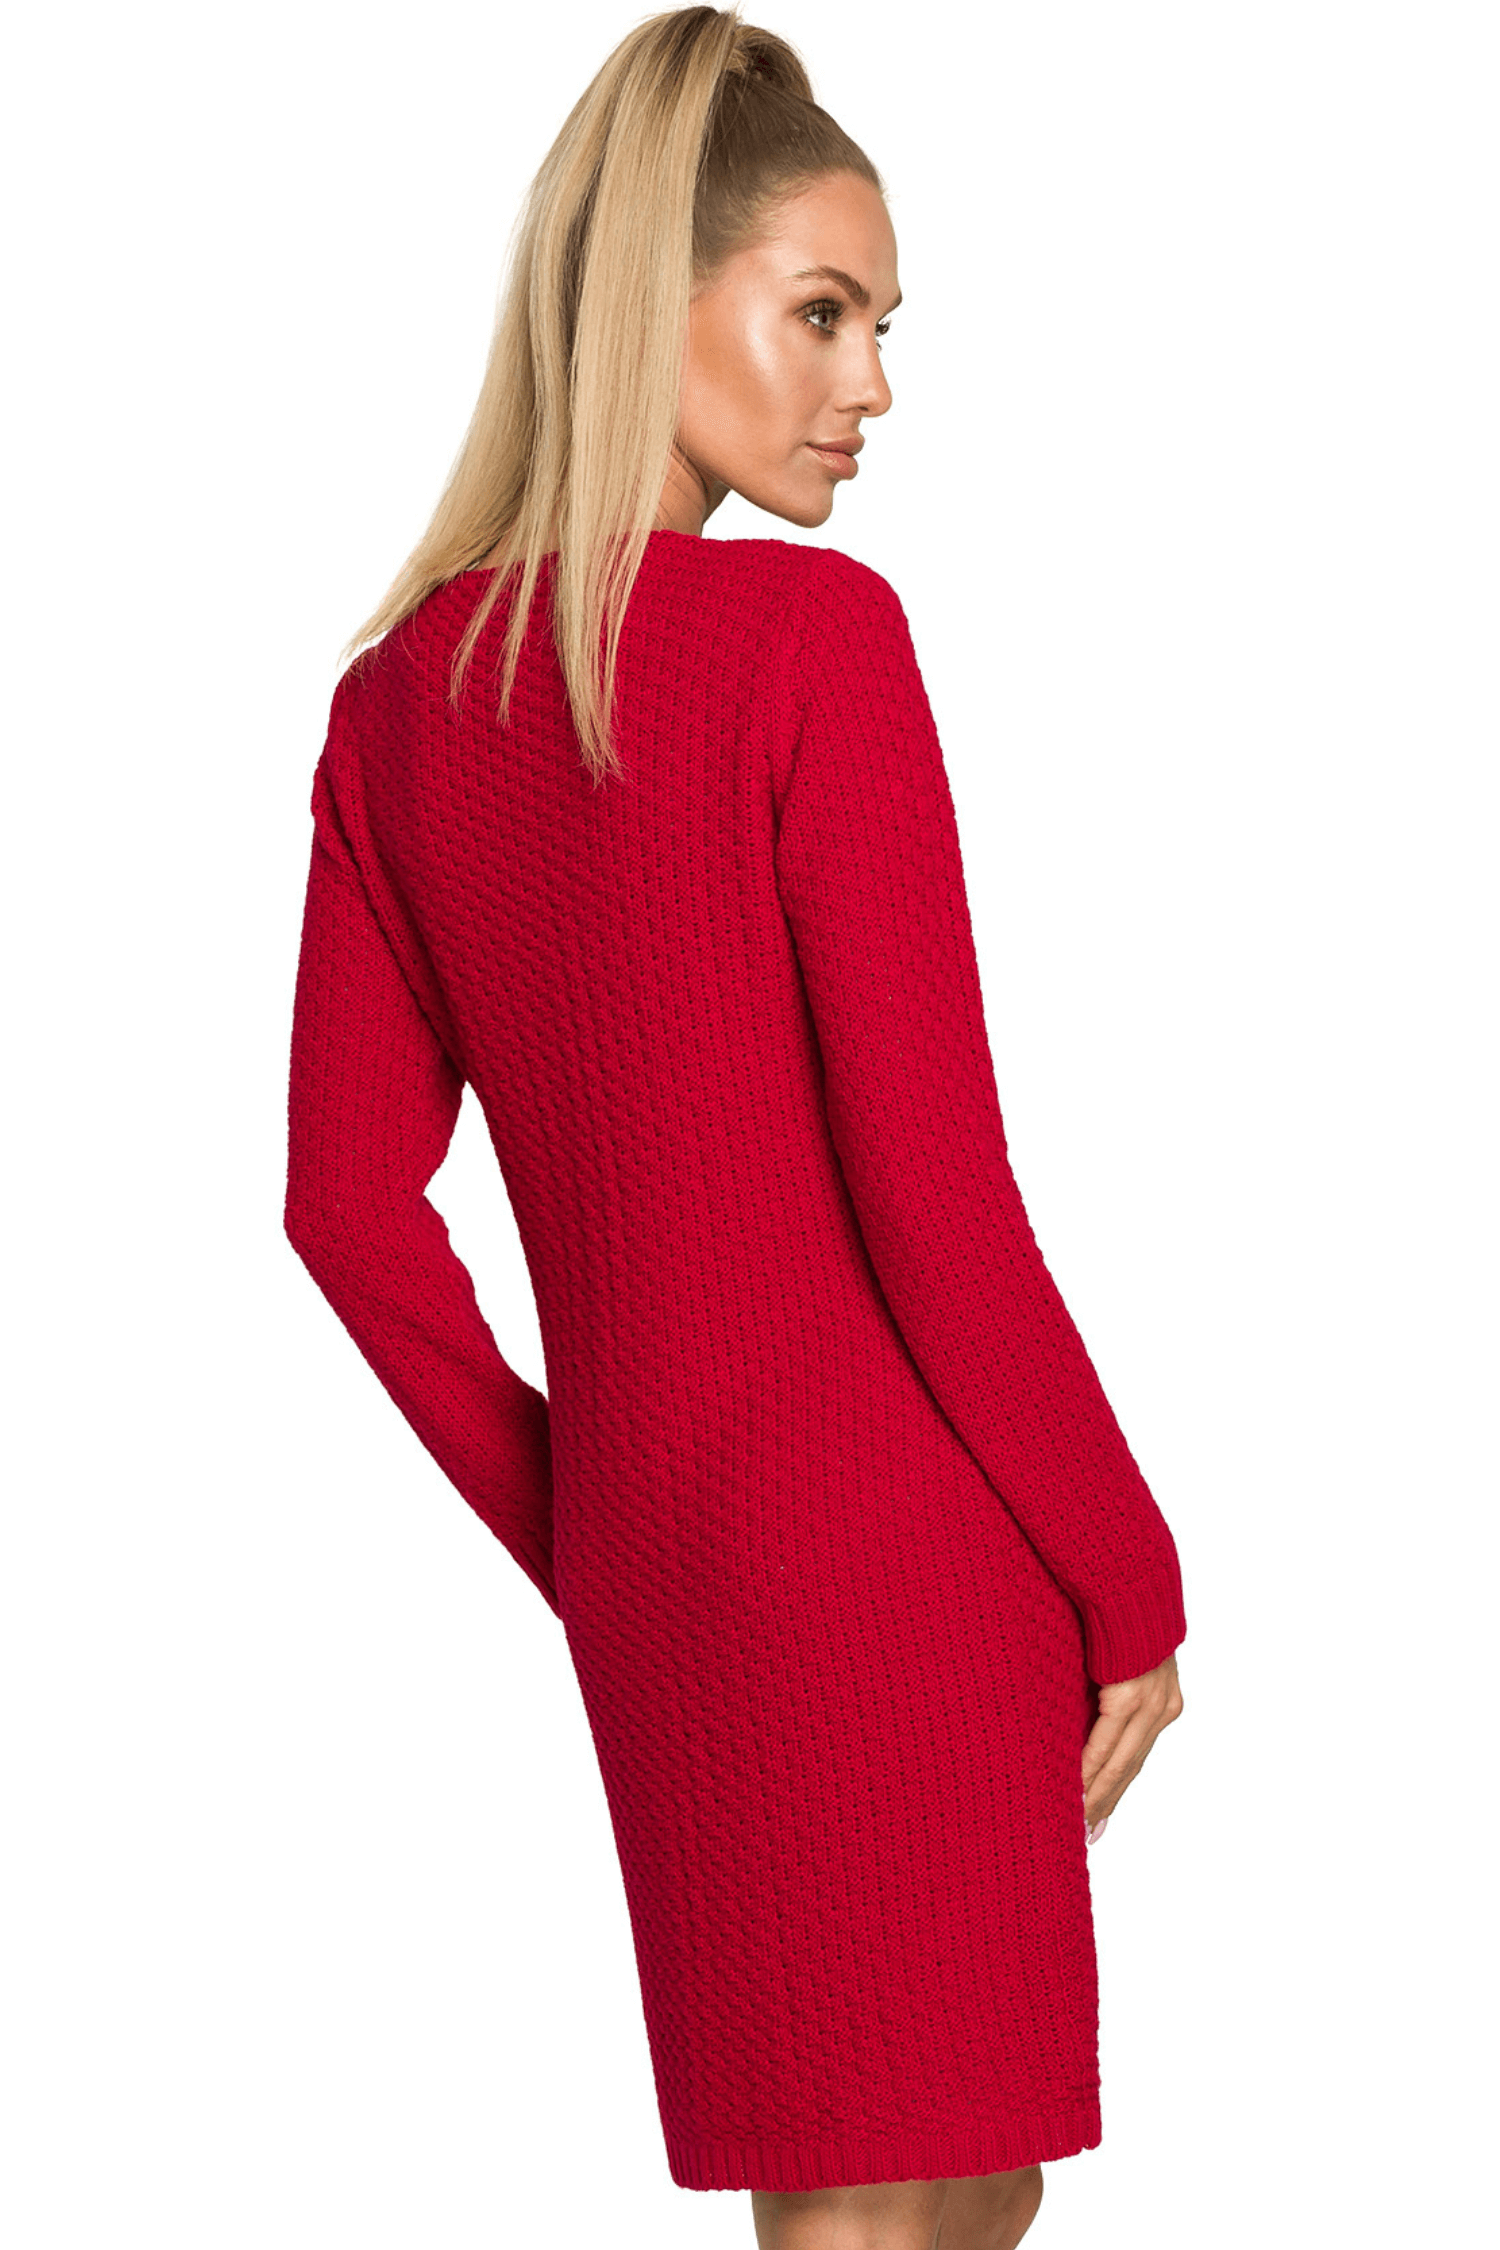 Opis: Sweter sukienka dzianinowa z dekoltem V splot w warkocz czerwona.